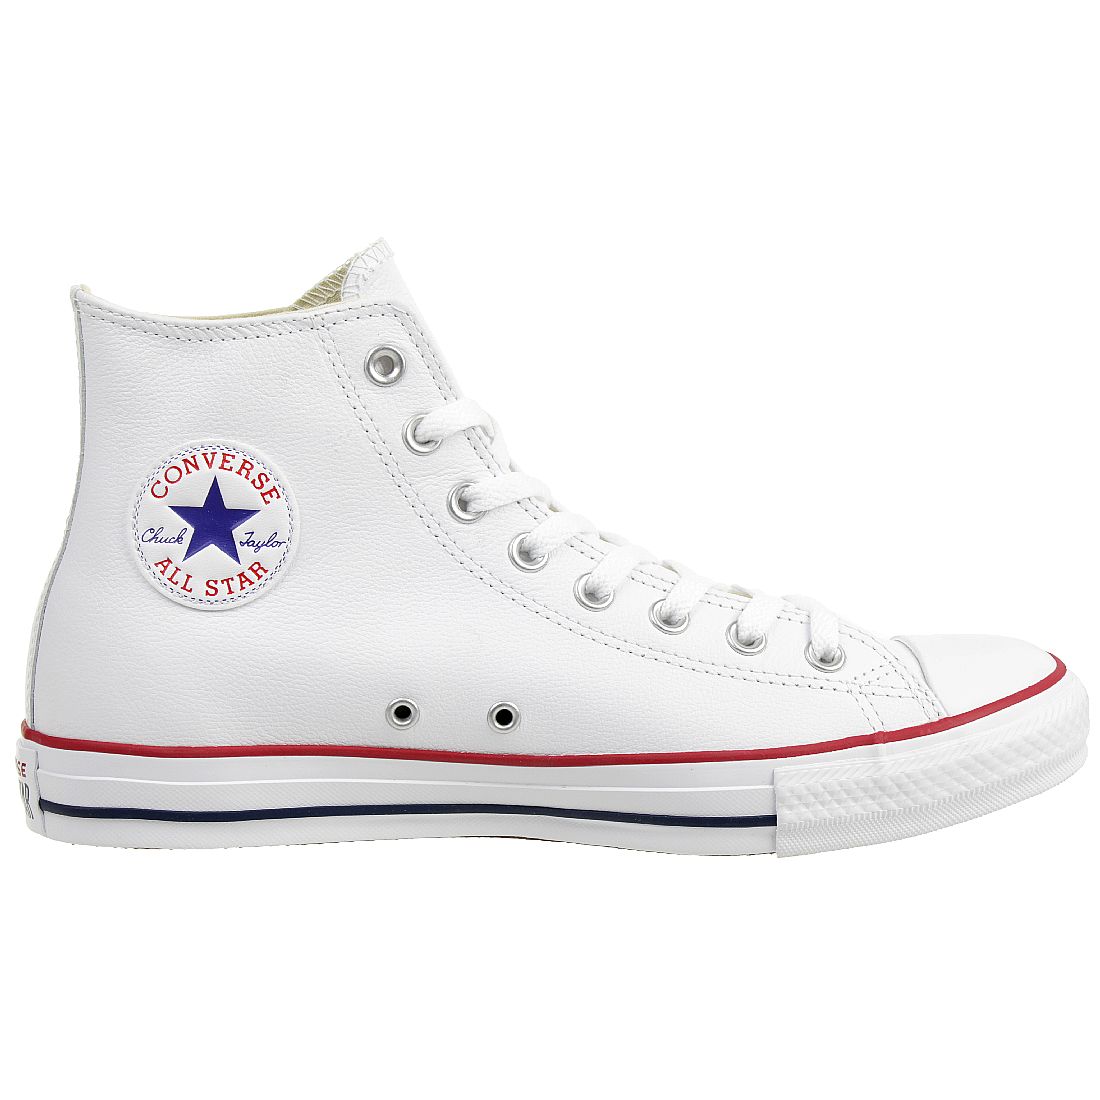 Converse C Taylor All Star HI Chuck Schuhe Sneaker Leder weiss 132169C